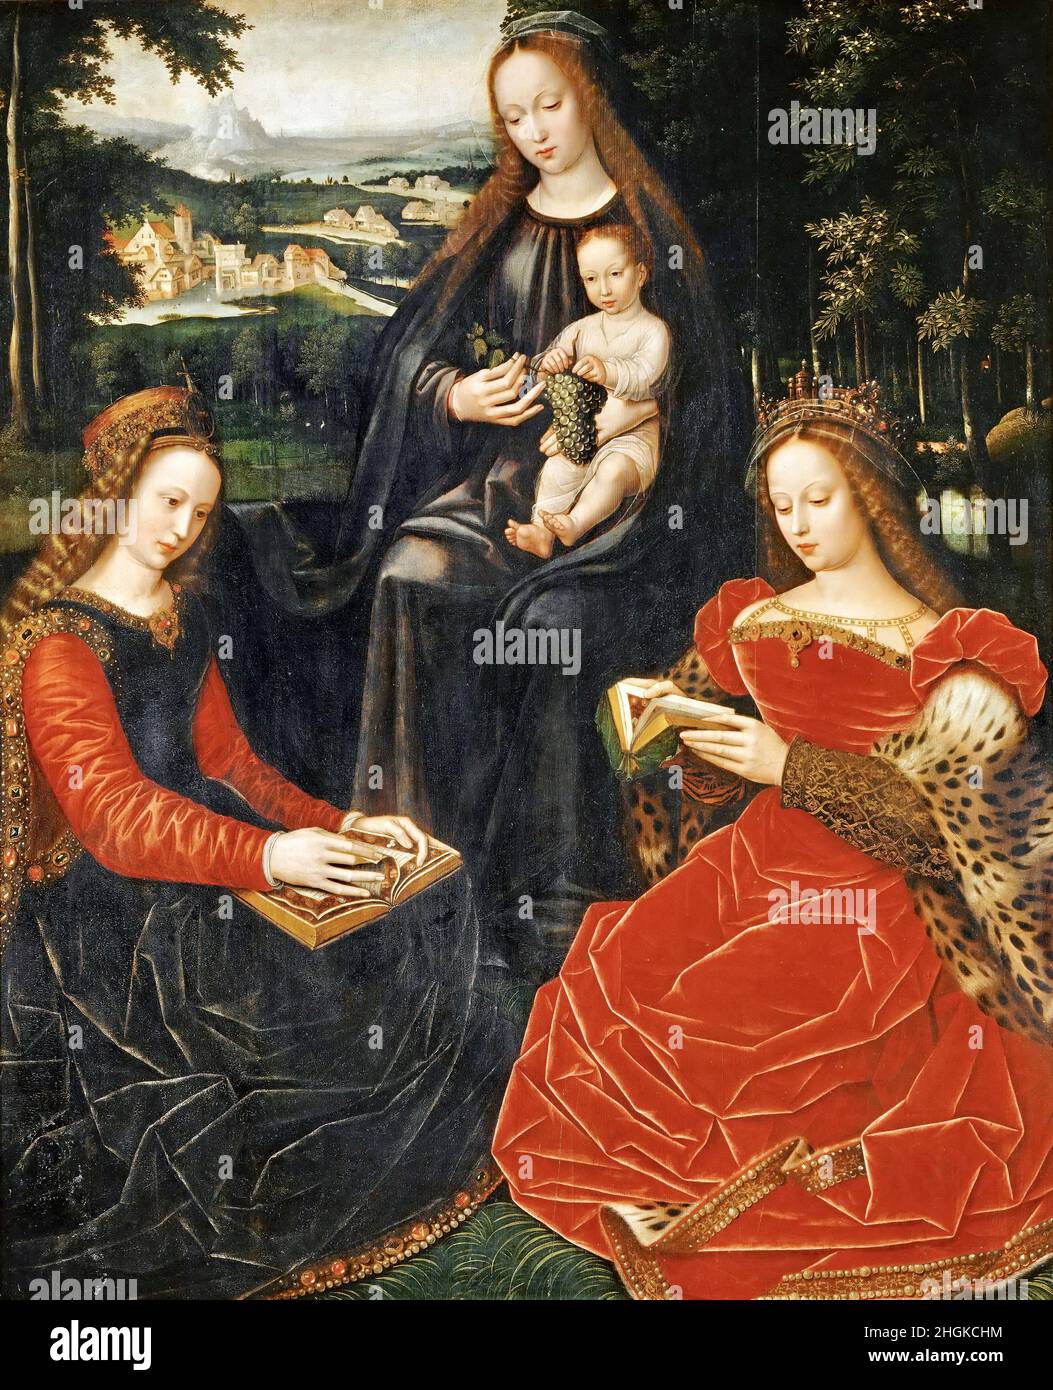 Vierge a l'enfant avec S Barbe et S Catherine d'Alexandrie - 1530 32 - huile sur bois 133 x 108,5 cm - Benzone Ambrogio - Ambrosius Benson - Banque D'Images